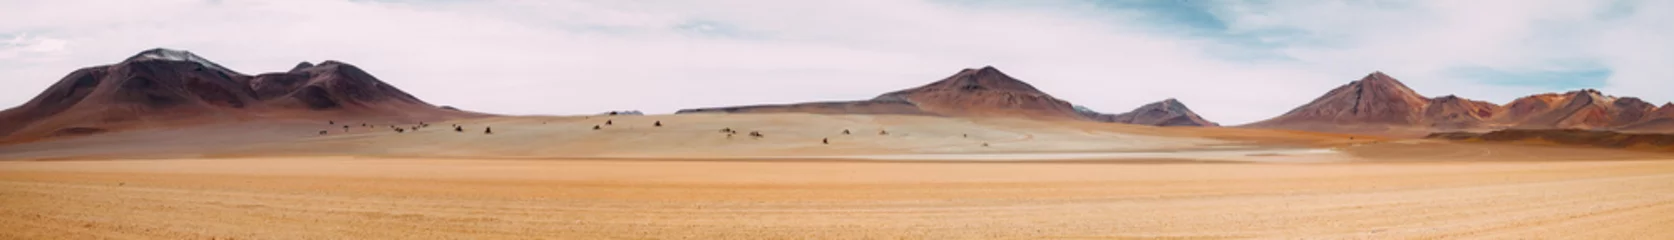 Abwaschbare Fototapete Sandige Wüste Die Weite des Nichts - Atacama-Wüste - Bolivien